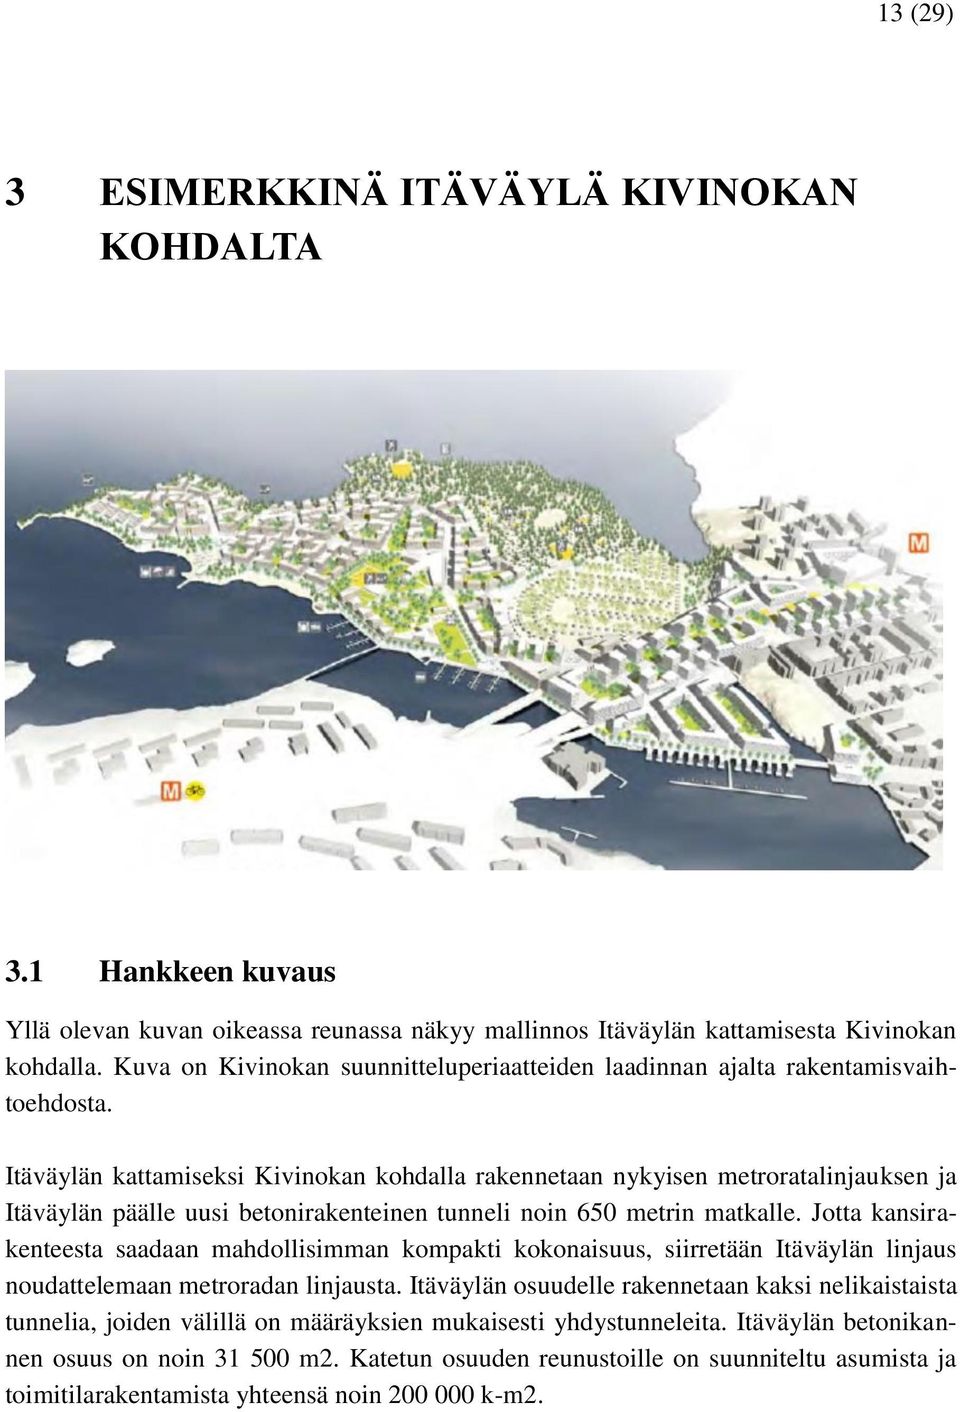 Itäväylän kattamiseksi Kivinokan kohdalla rakennetaan nykyisen metroratalinjauksen ja Itäväylän päälle uusi betonirakenteinen tunneli noin 650 metrin matkalle.